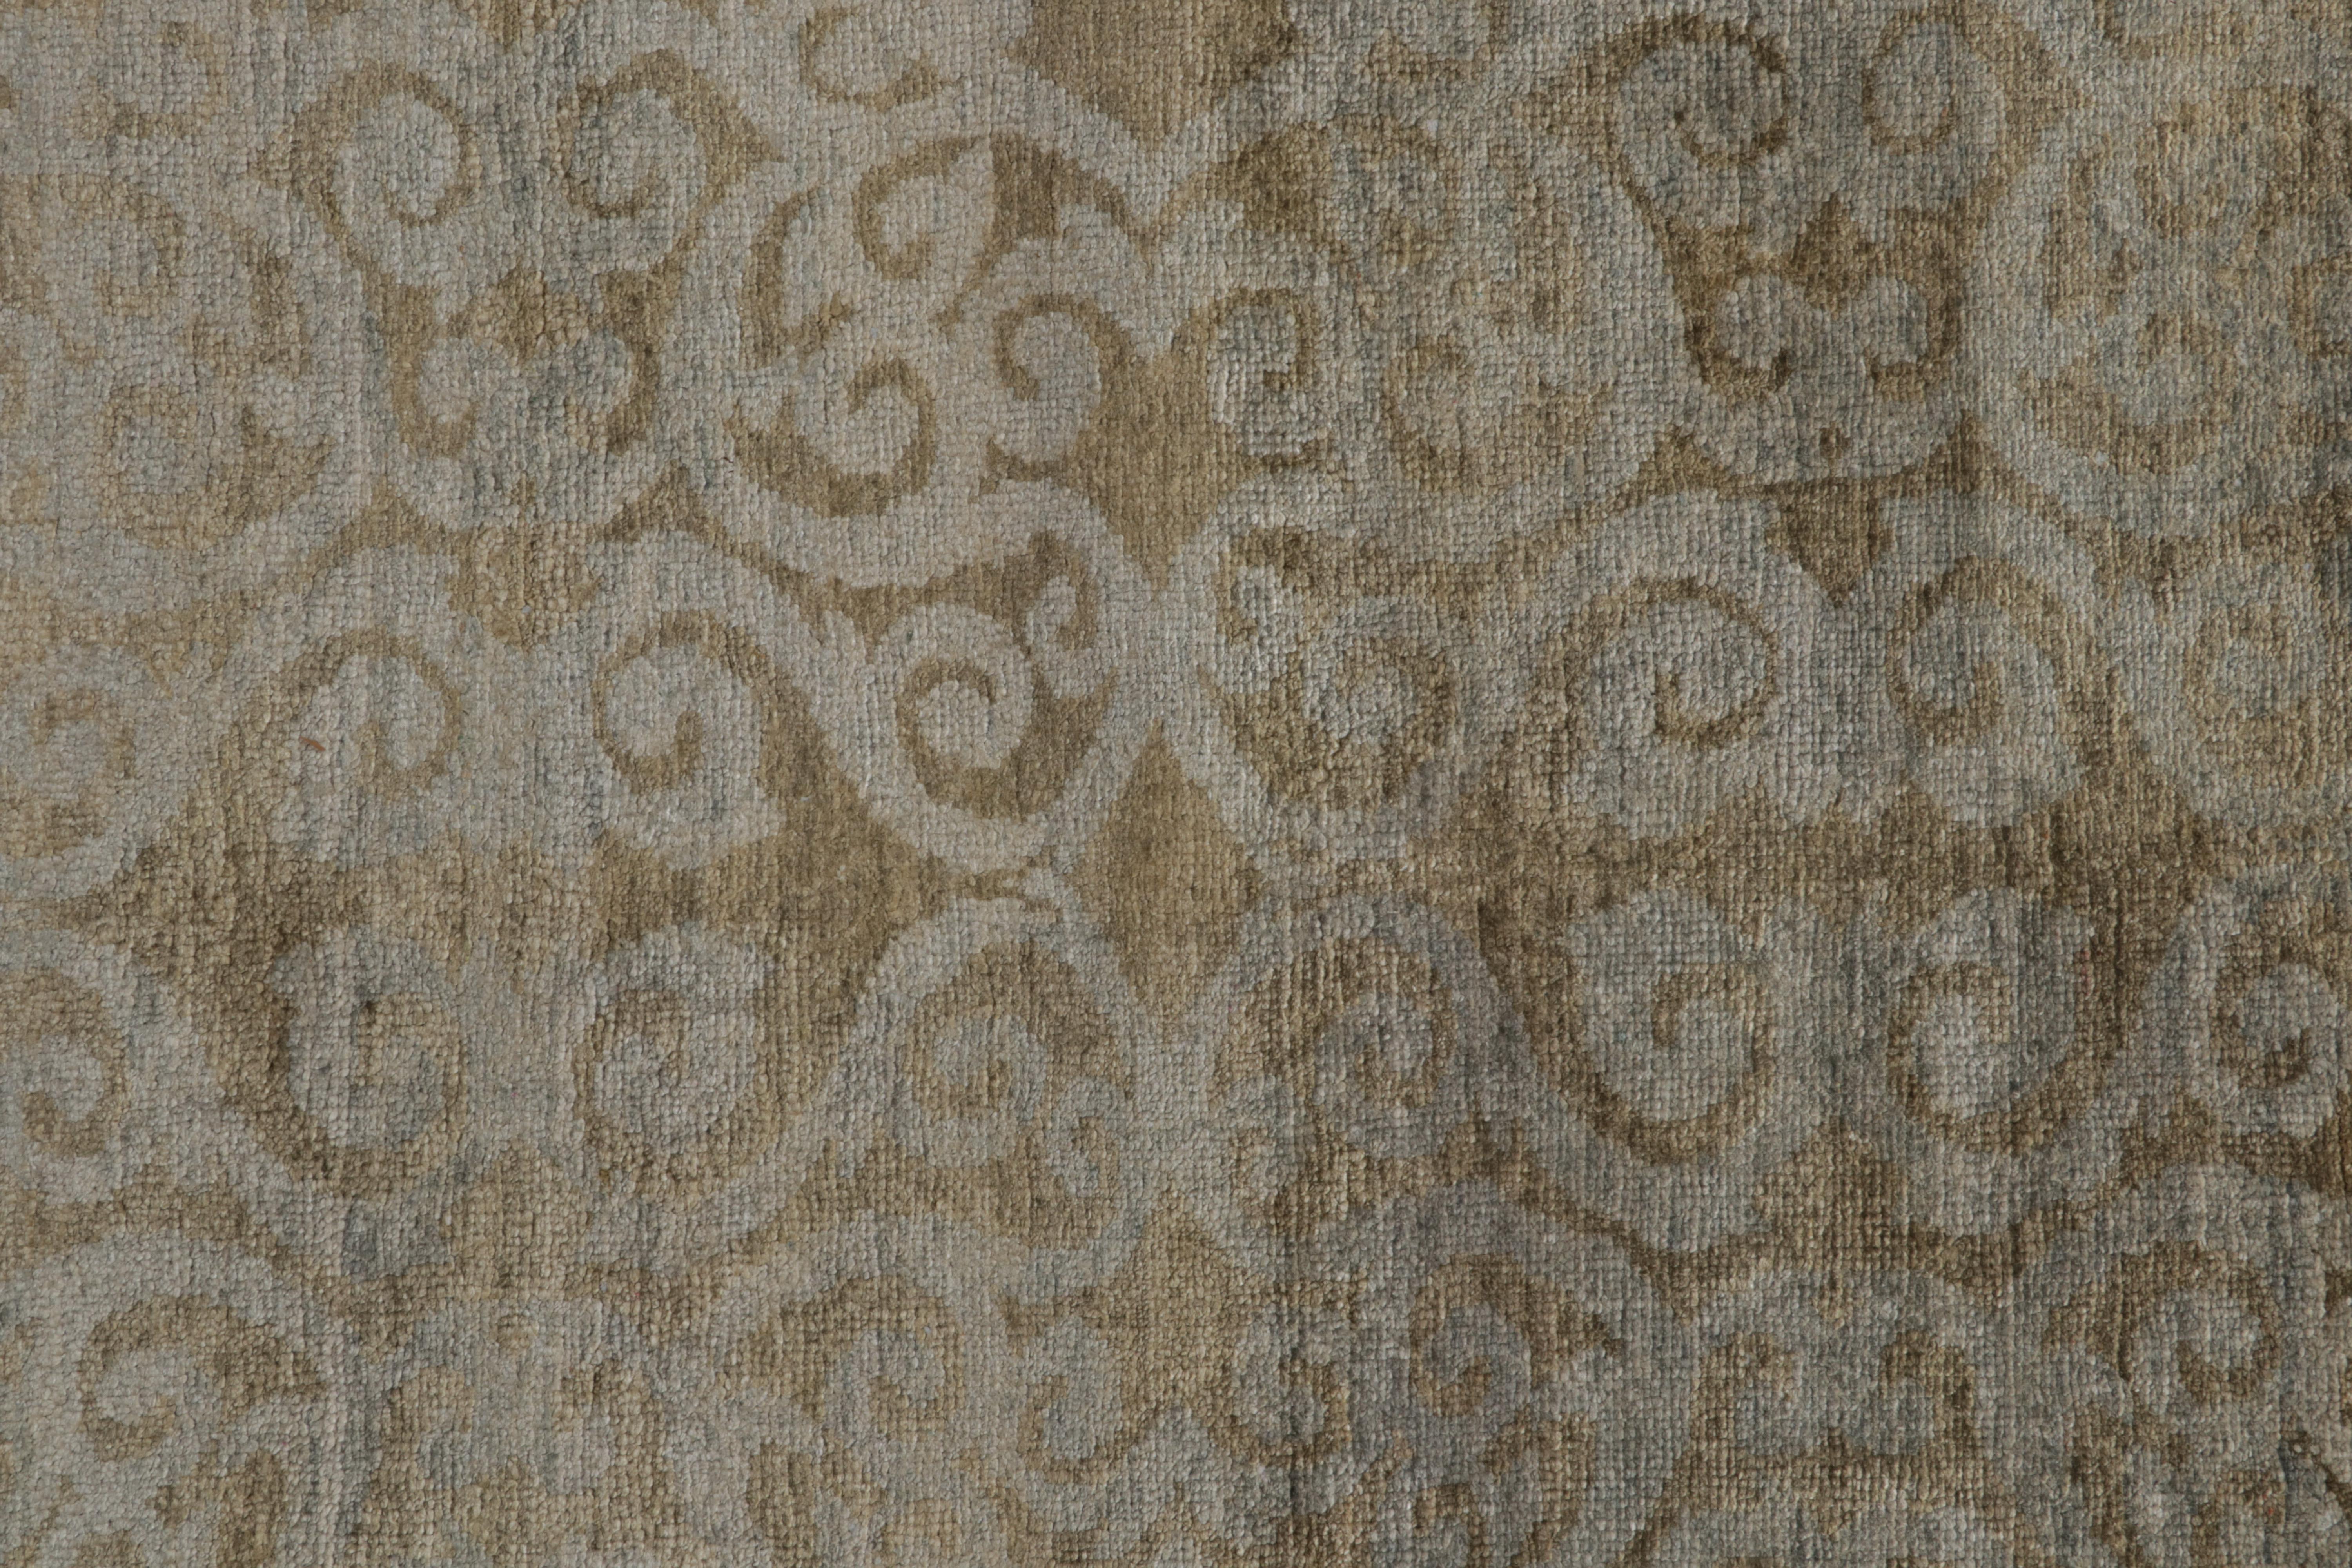 XXIe siècle et contemporain Rug & Kilim's Khotan Style Rug in Golden-Brown with Blue Patterns (tapis de style Khotan en brun doré avec des motifs bleus) en vente